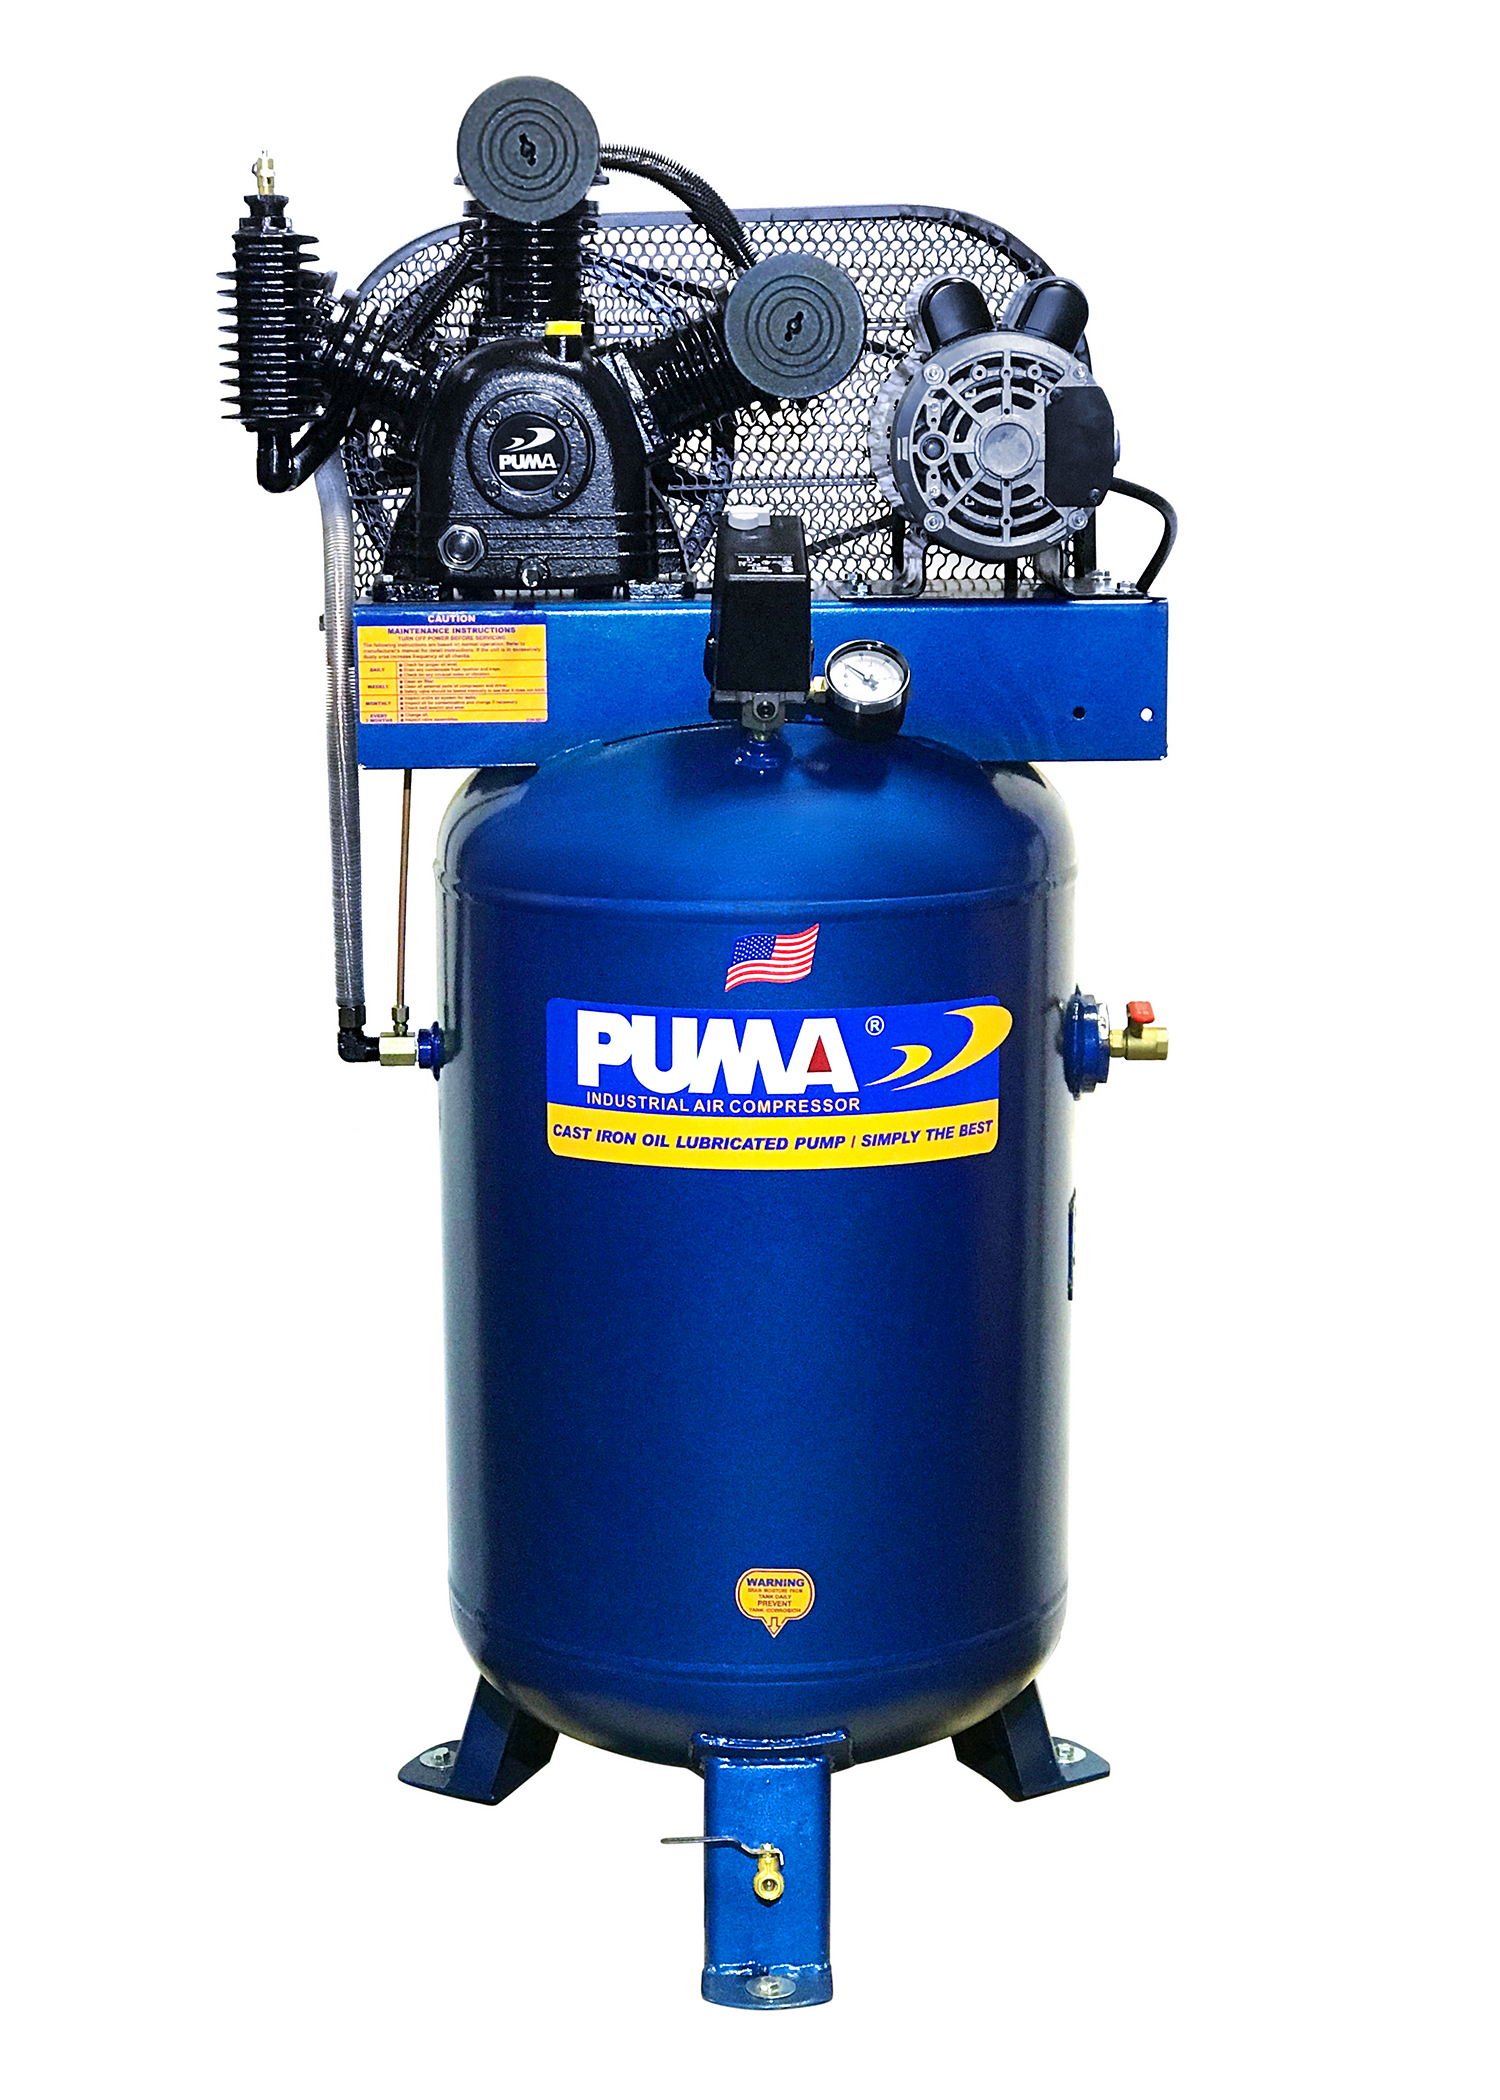 puma air compressor in pakistan